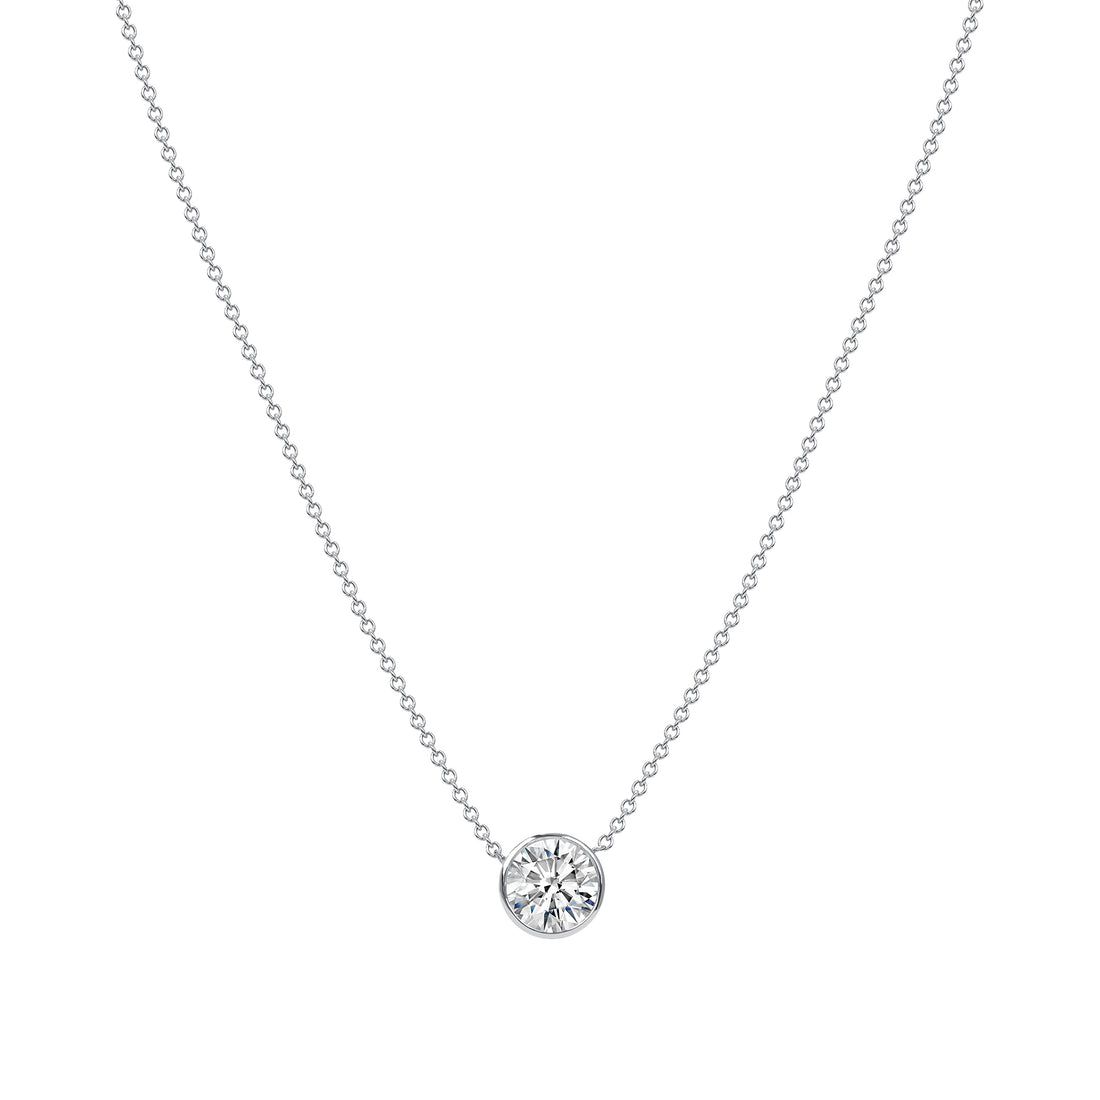 1.52 CT. Round Brilliant Diamond Pendant Necklace in 14K White Gold